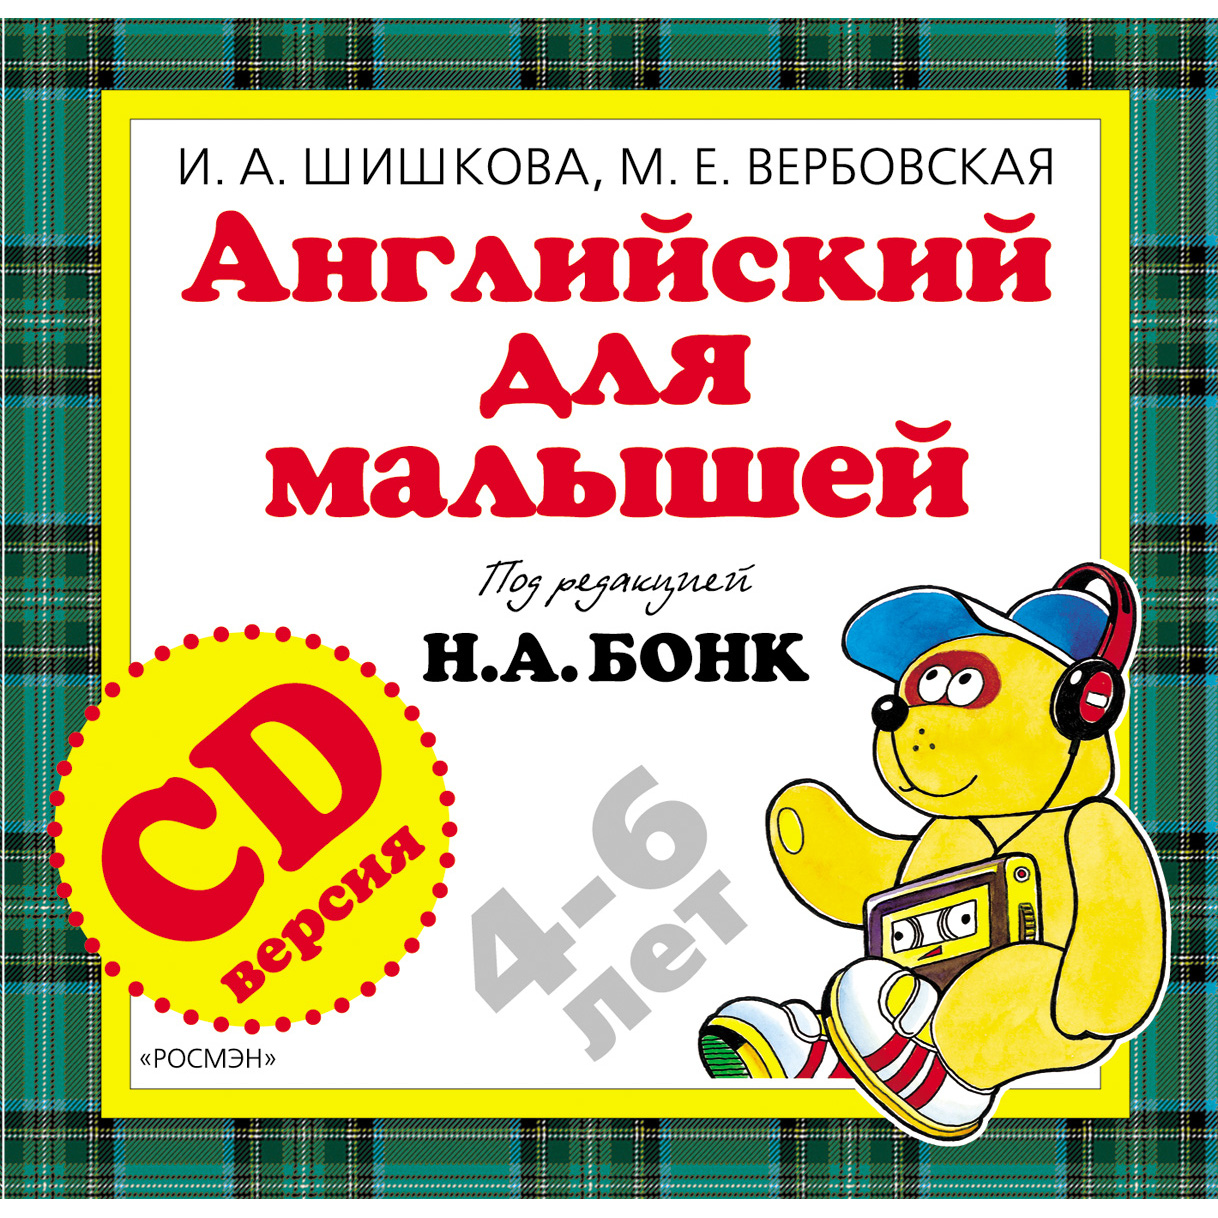 Комплект - Английский для малышей.  И. А.  Шишкова, книга, тетрадь, CD  